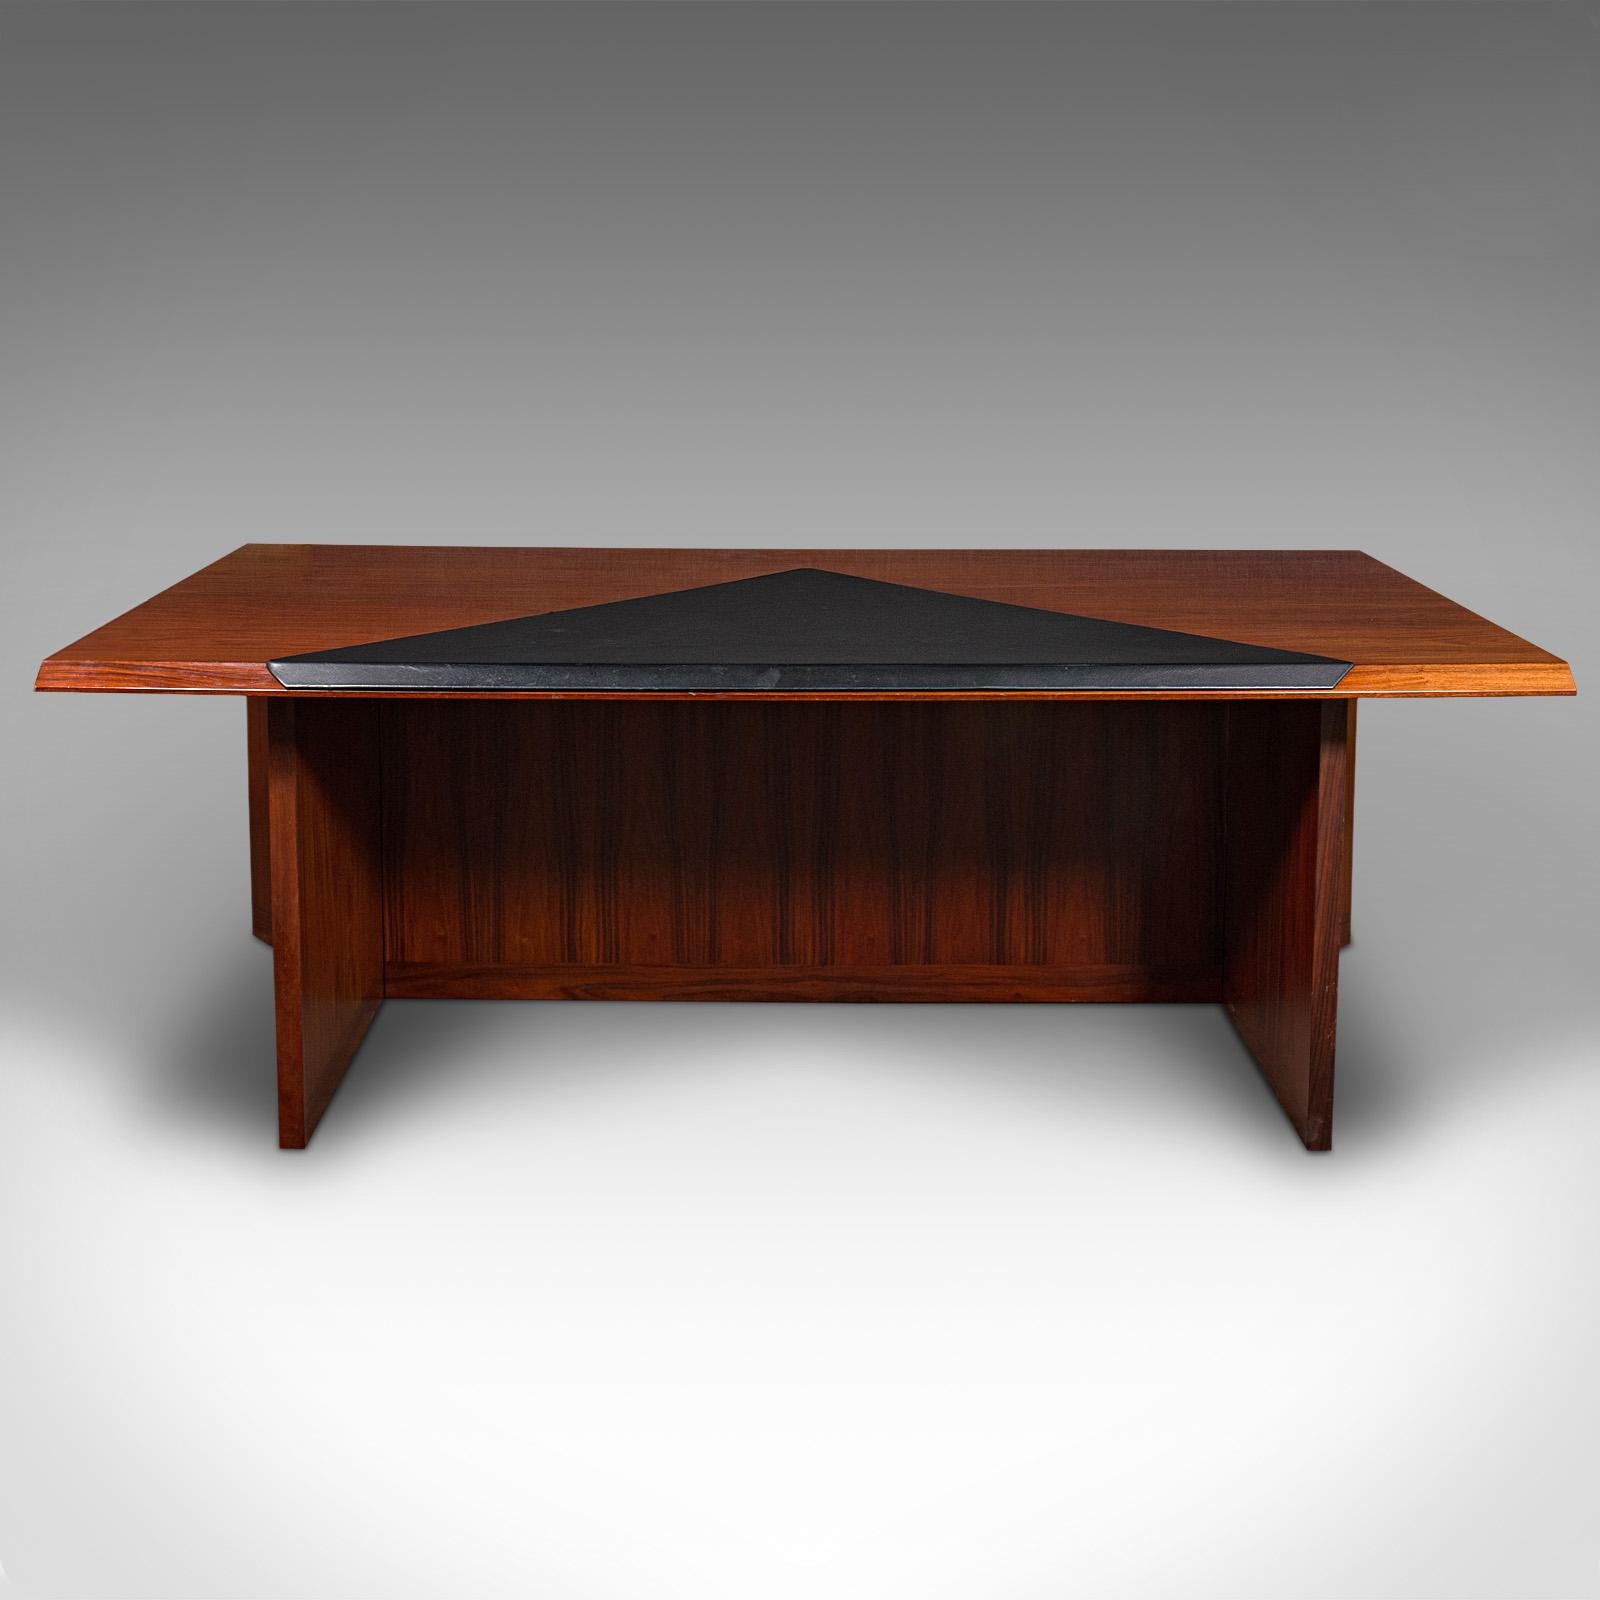 
Il s'agit d'un grand bureau de direction vintage. Table de bureau design danoise en bois de rose, réalisée par Sibast Mobel, probablement sur mesure, datant de la fin du XXe siècle, vers 1970.

Sibast Mobel a été fondé par Helge Sibast (1908 -